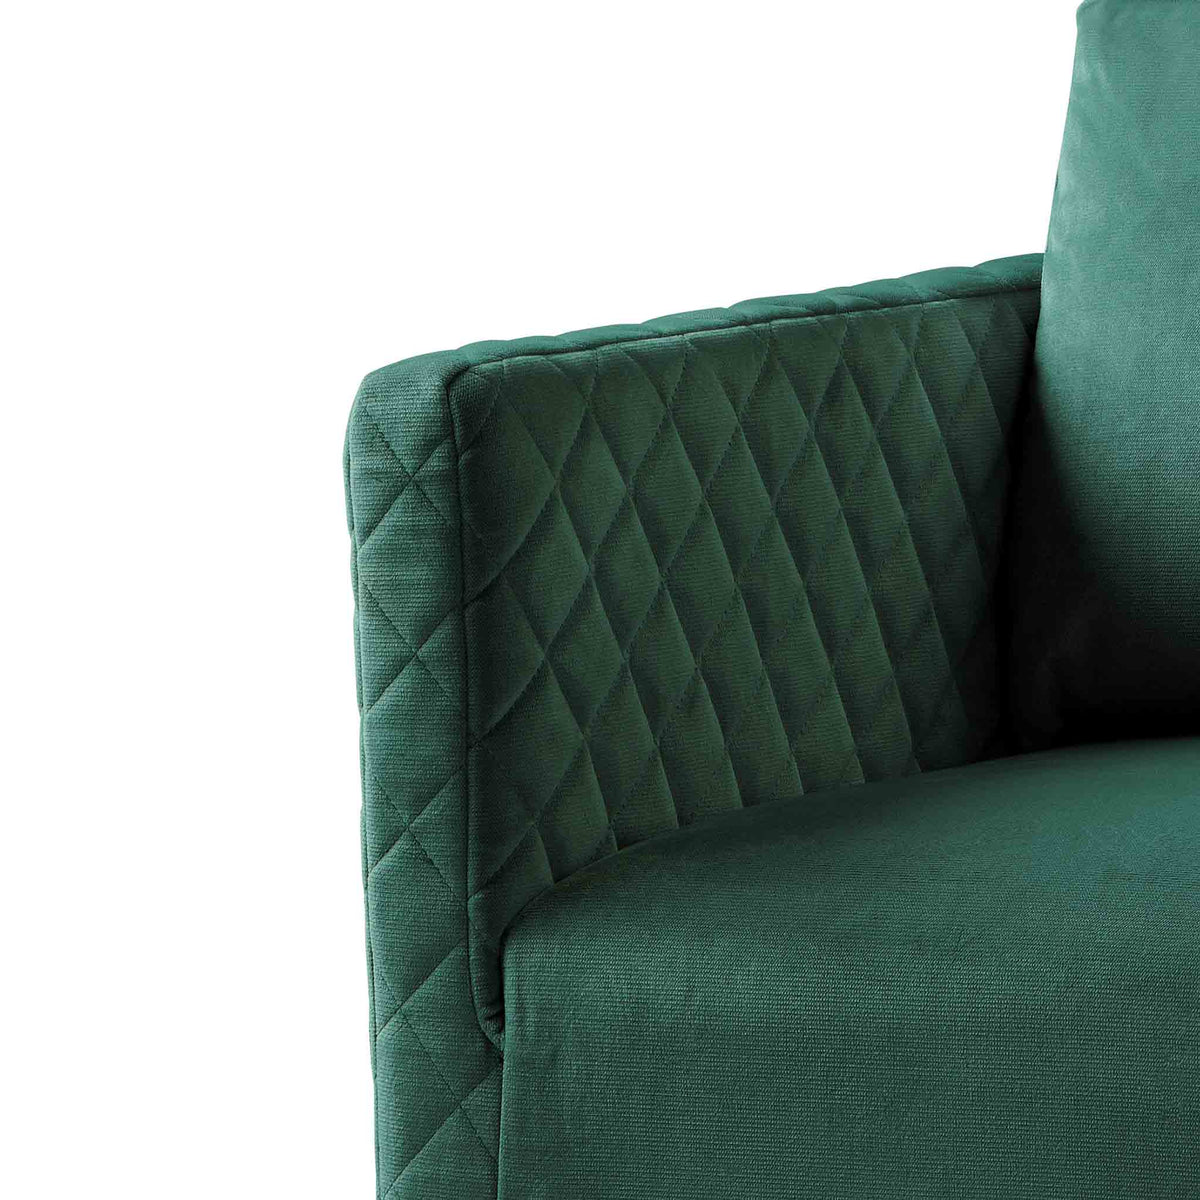 close up of the upholstered velvet fabric for the Bali Jasper Velvet Accent Chair